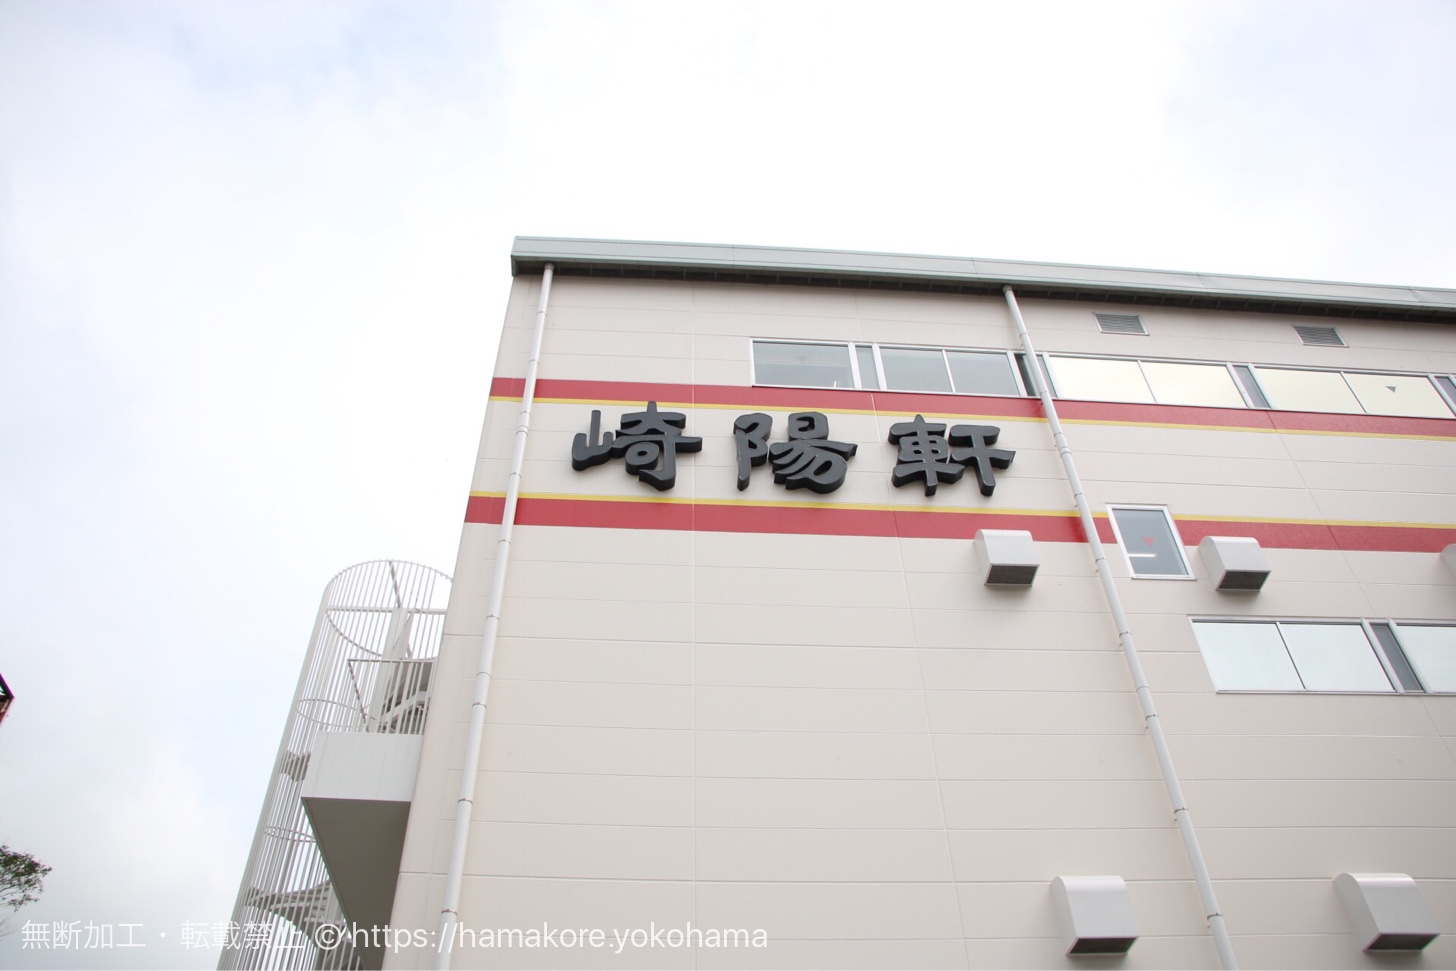 崎陽軒 横浜工場に最寄駅「新横浜駅」からバスで行く方法